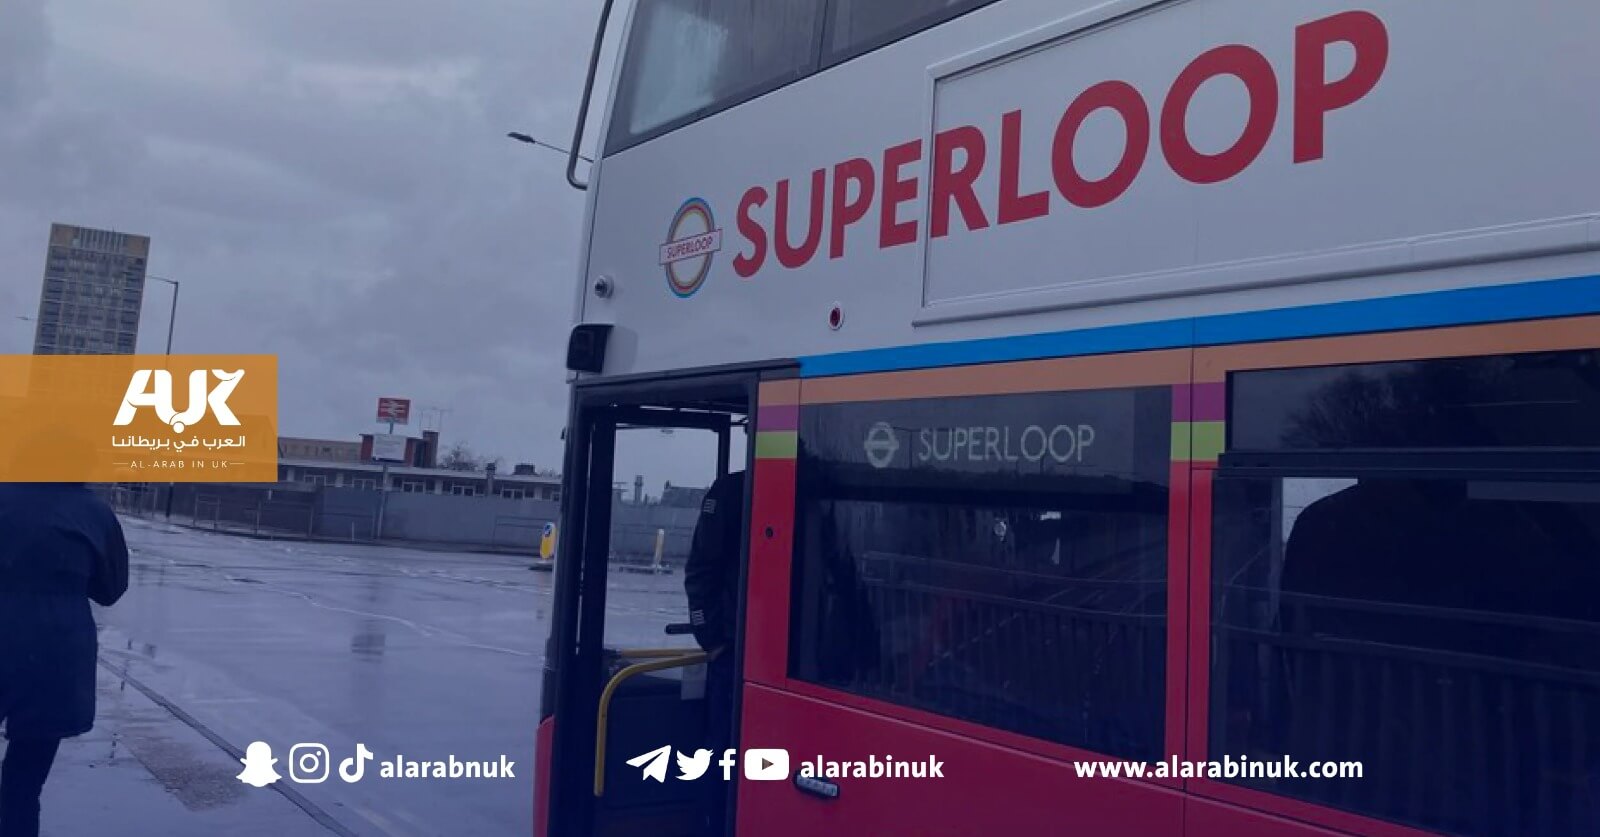 عمدة لندن يكشف عن مشروع حافلات لندن الجديد "سوبرلوب"